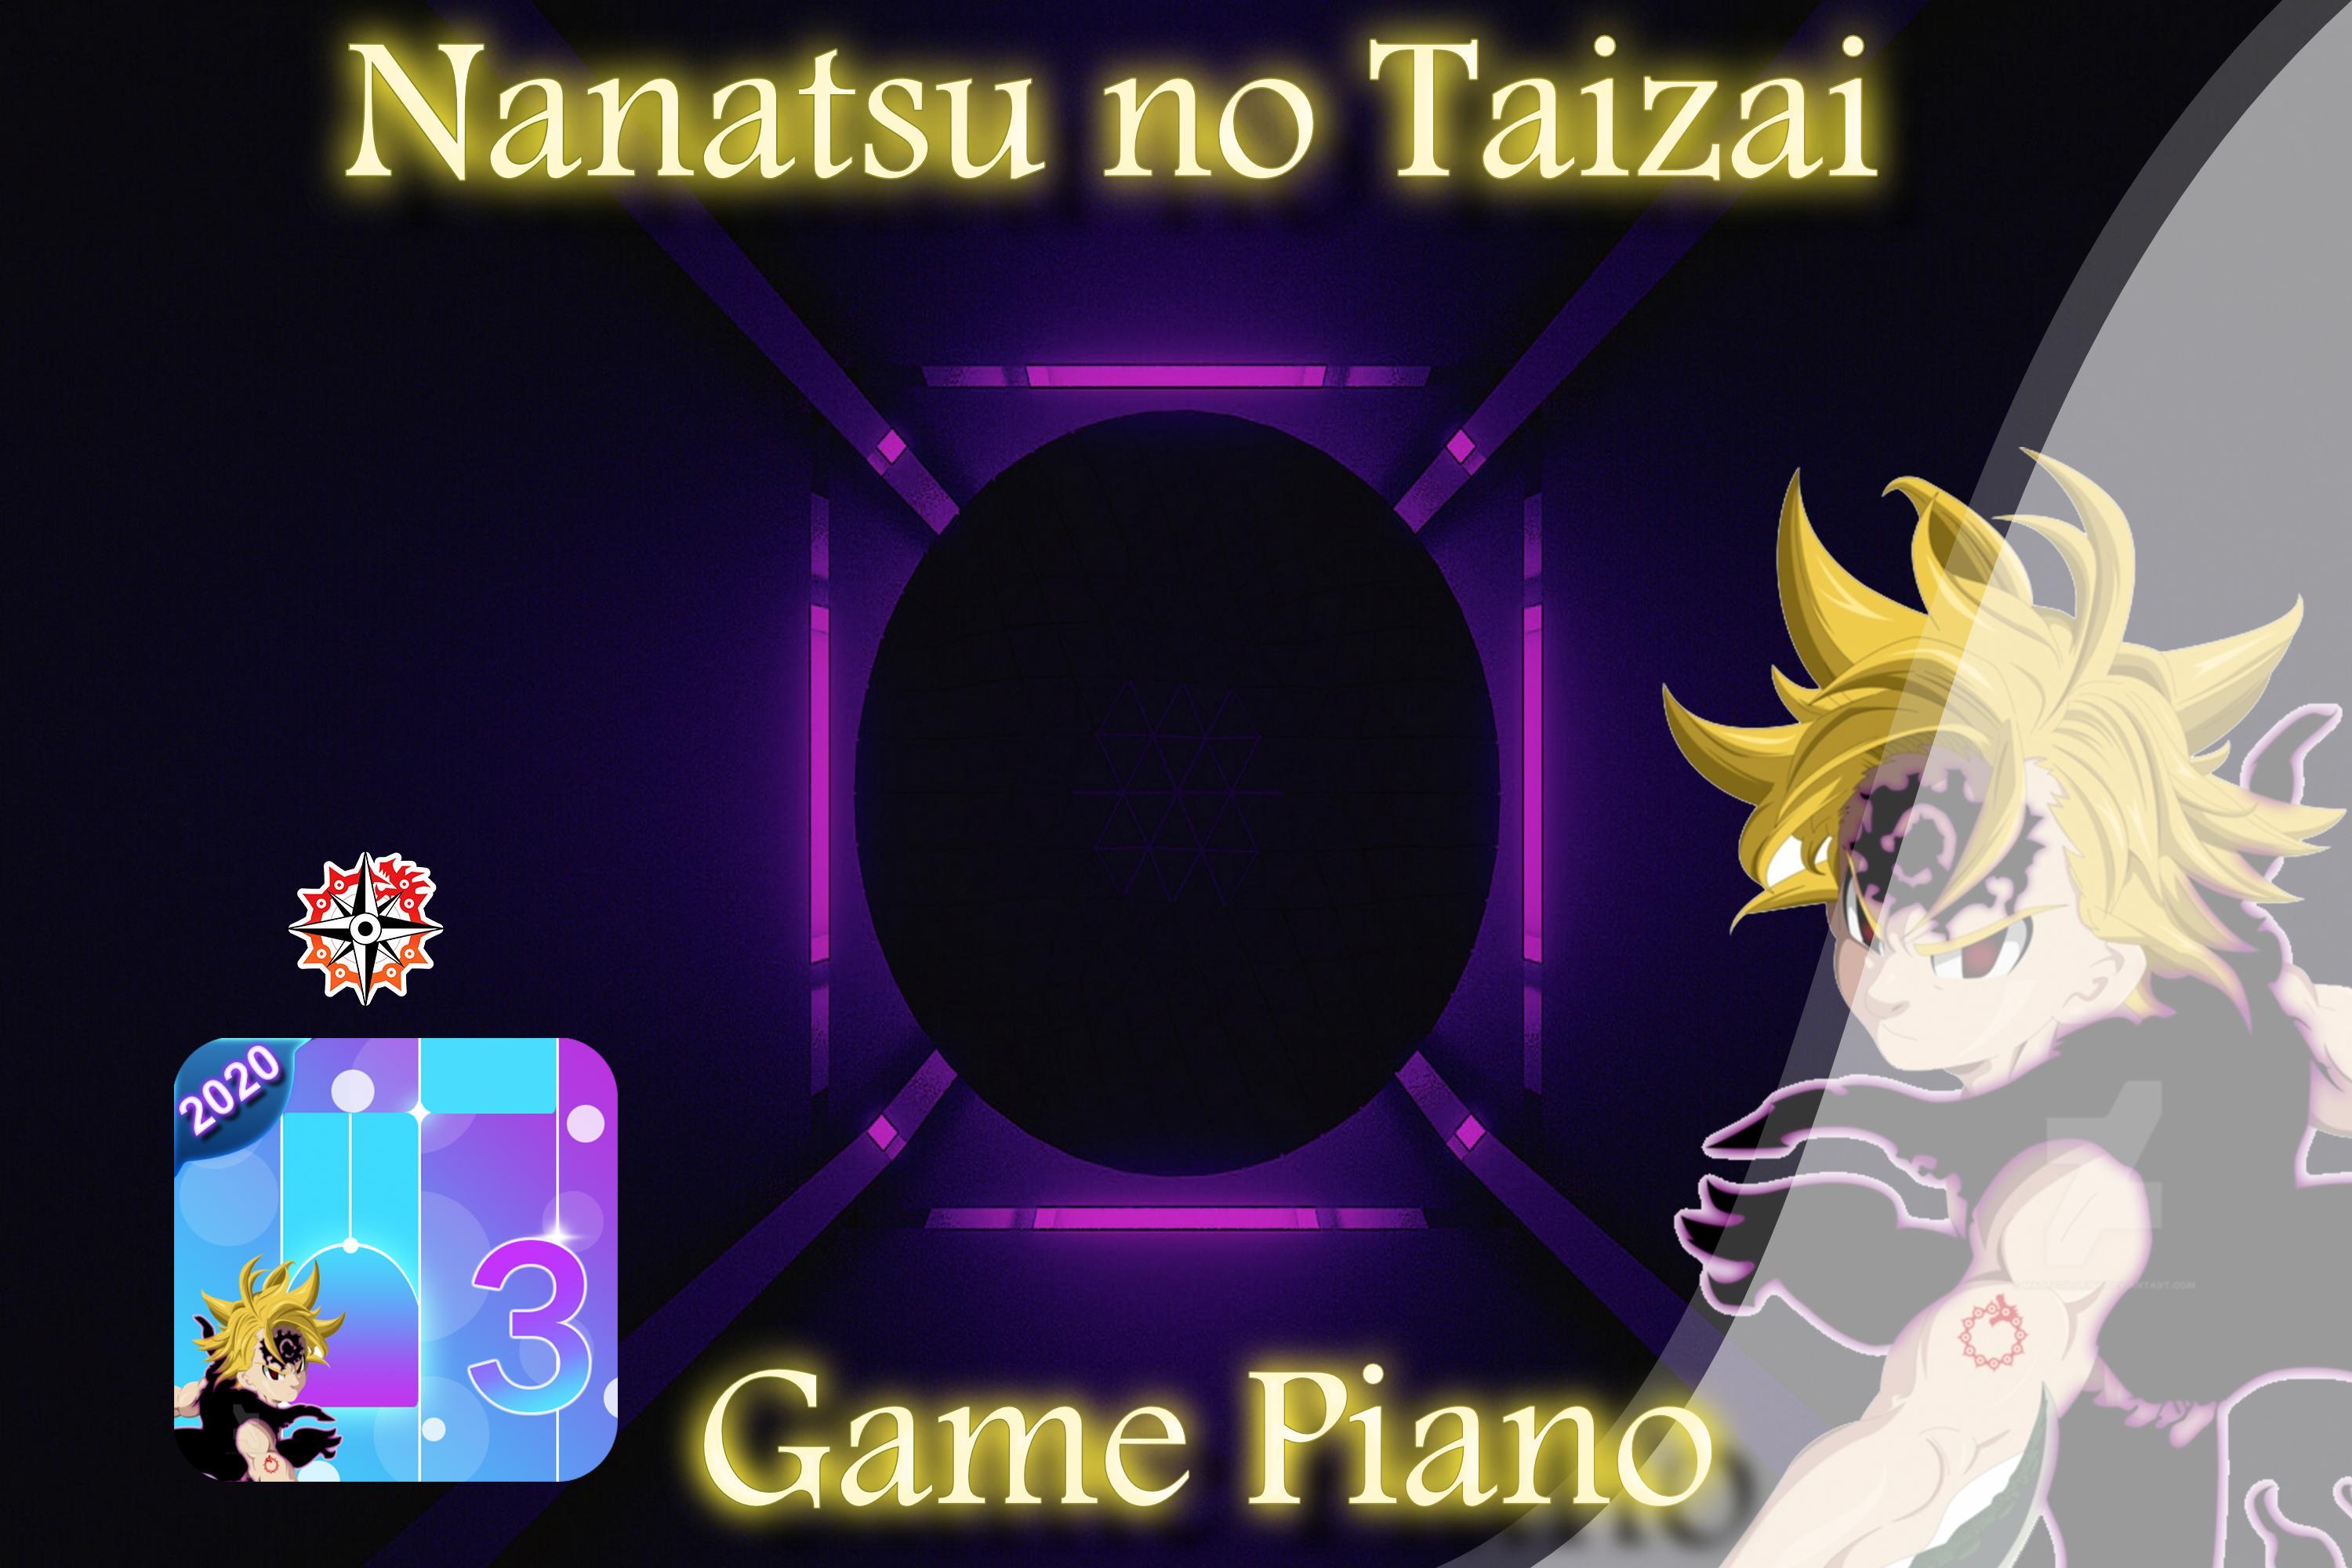 Piano Game For Nanatsu No Taizai For Android Apk Download - elizabeth nanatsu no taizai roblox